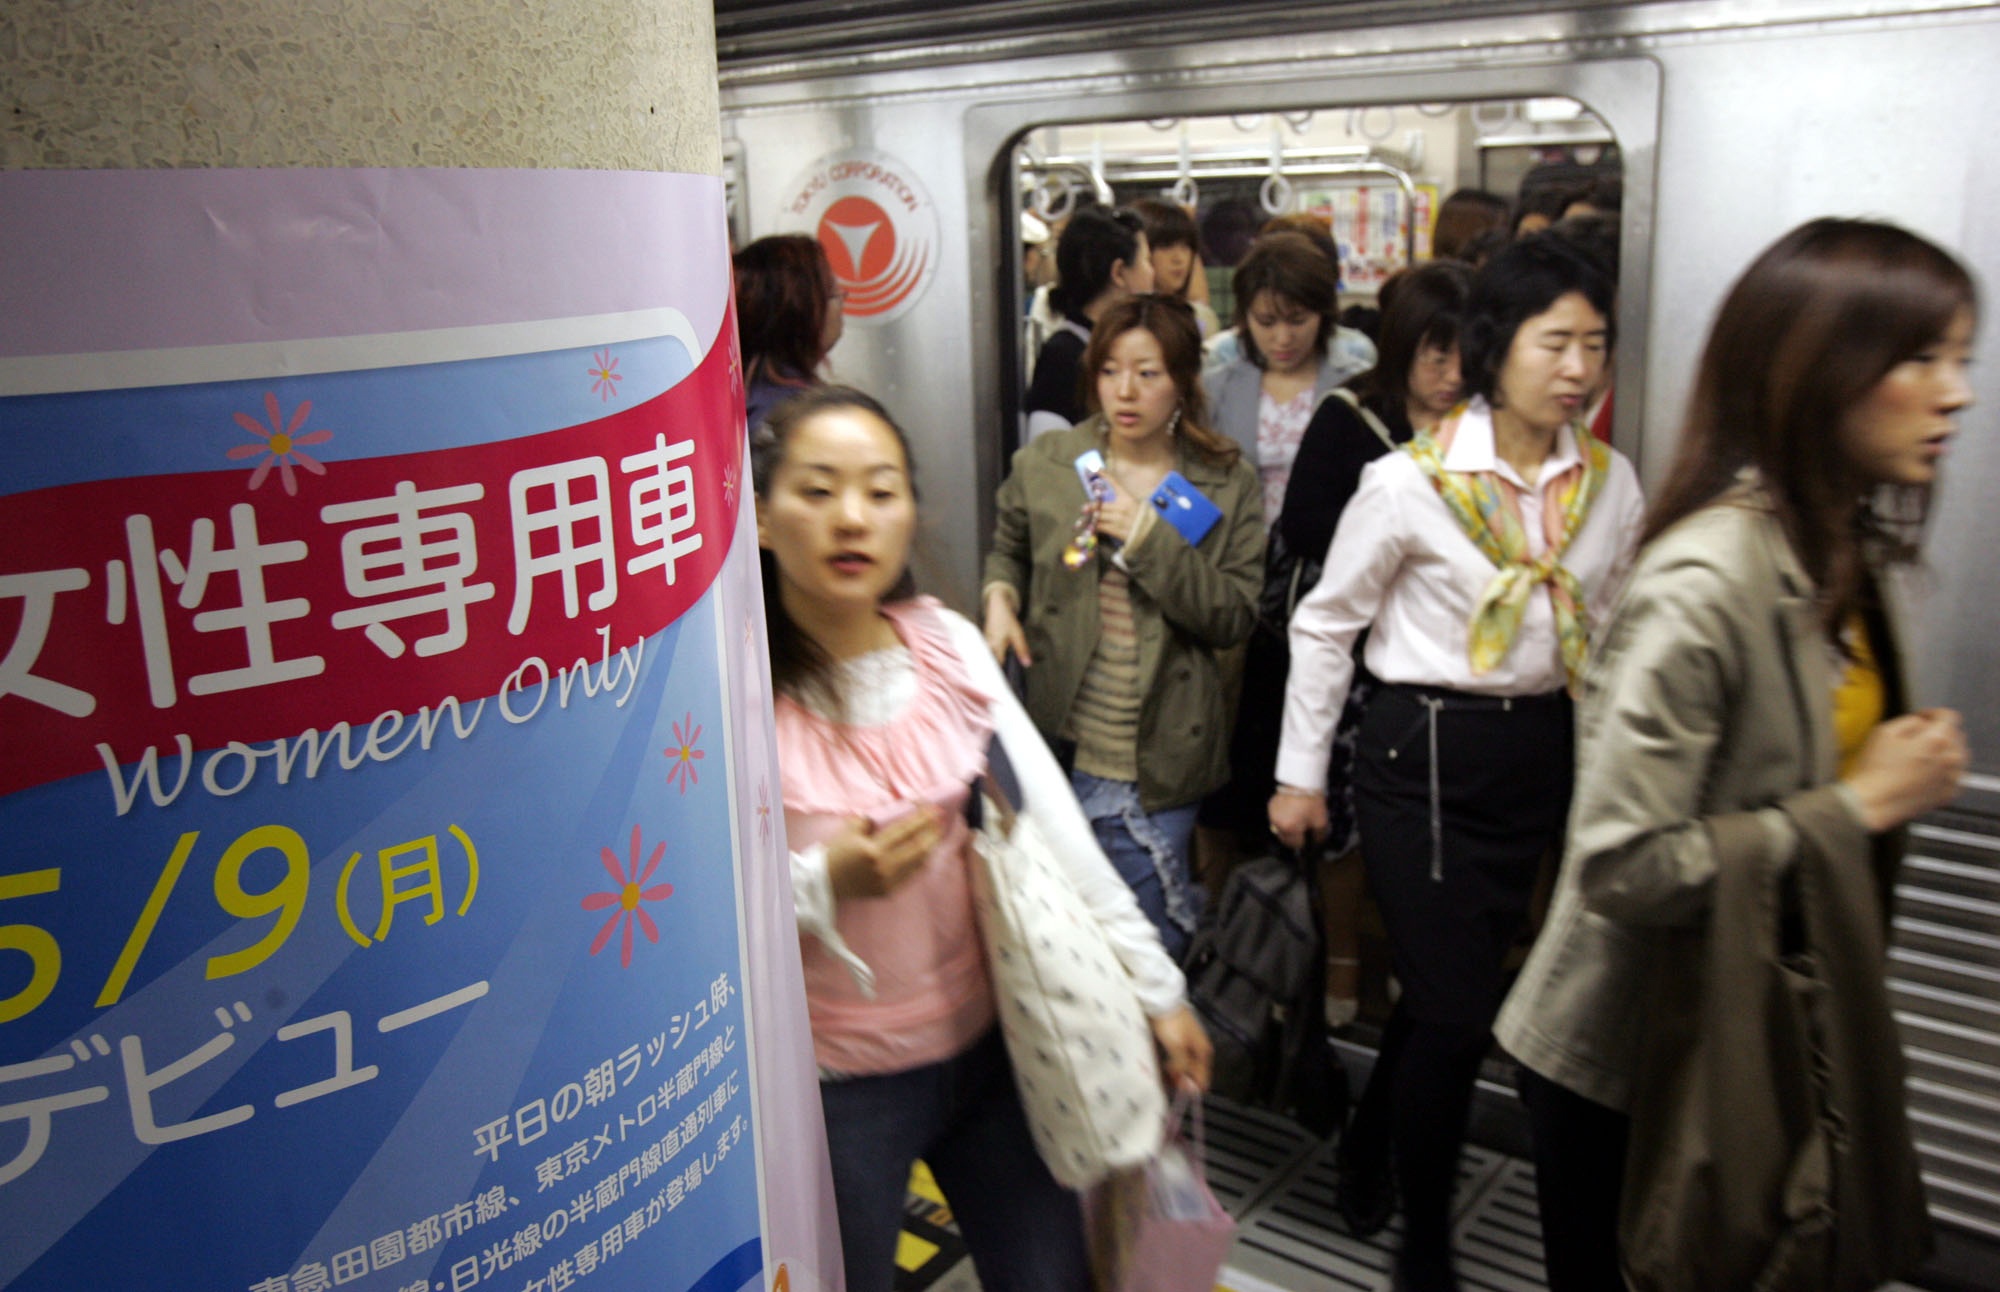 Särskilda kvinnovagnar i kollektivtrafiken har funnits i Japan sedan år 2000. Våren 2005 introducerades de på flera linjer i Tokyos tunnelbana efter att antalet anmälningar om sexuella trakasserier skjutit i höjden.